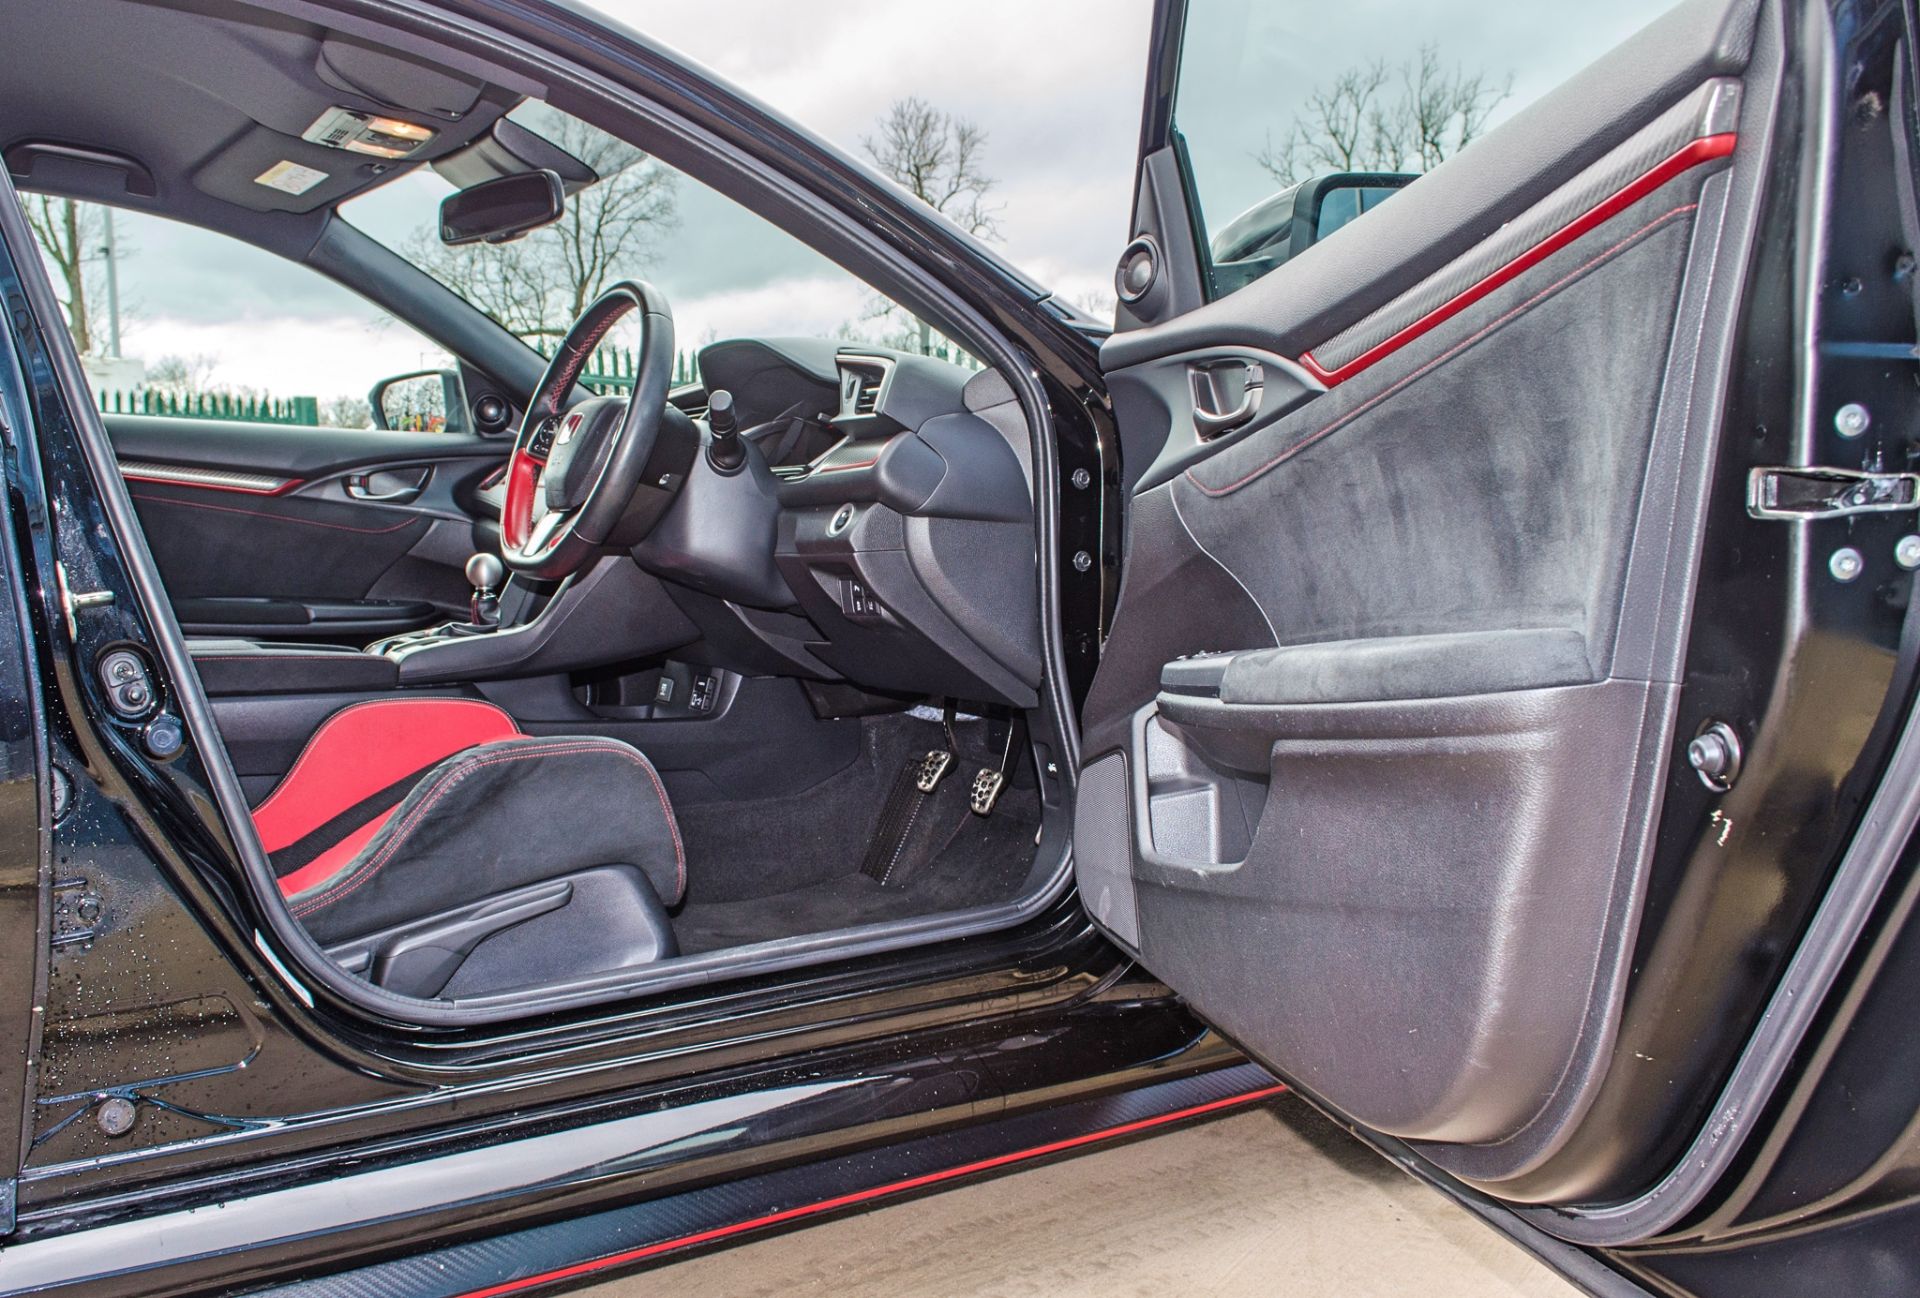 2018 Honda Civic GT Type R V-Tec 5 door hatchback Registration: DU68YHN Odometer: 16,429 Colour: - Image 32 of 54